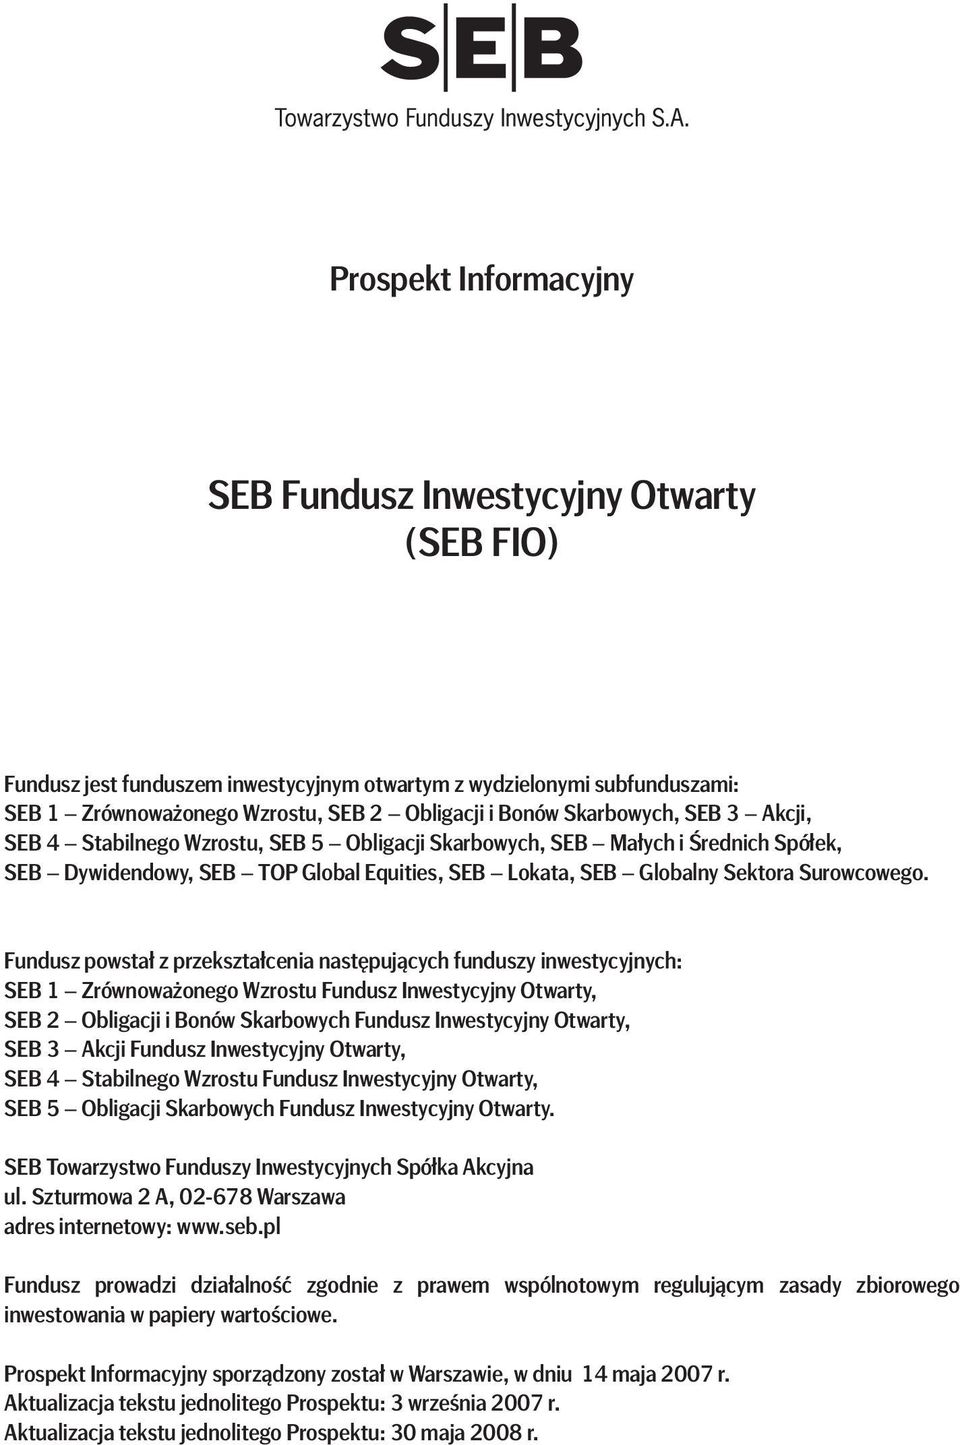 Fundusz powstał z przekształcenia następujących funduszy inwestycyjnych: SEB 1 Zrównoważonego Wzrostu Fundusz Inwestycyjny Otwarty, SEB 2 Obligacji i Bonów Skarbowych Fundusz Inwestycyjny Otwarty,